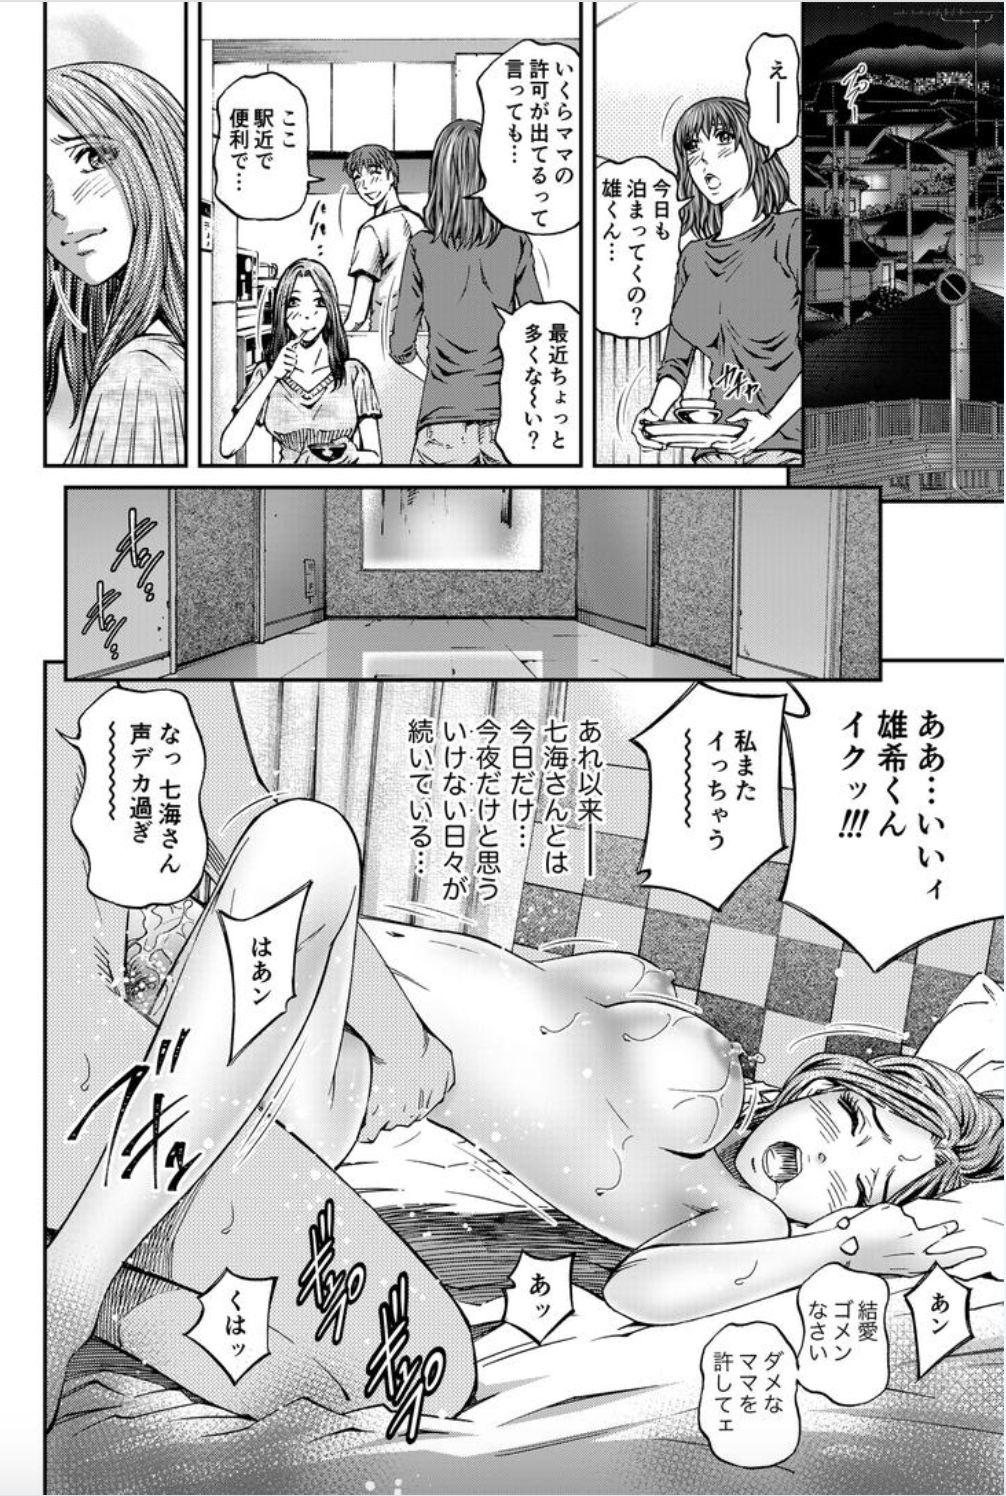 Butts Onna-tachi ga Iku Toki... Ero Drama Vol. 8 Datte, Kanojo no Haha ga... Tattooed - Page 20